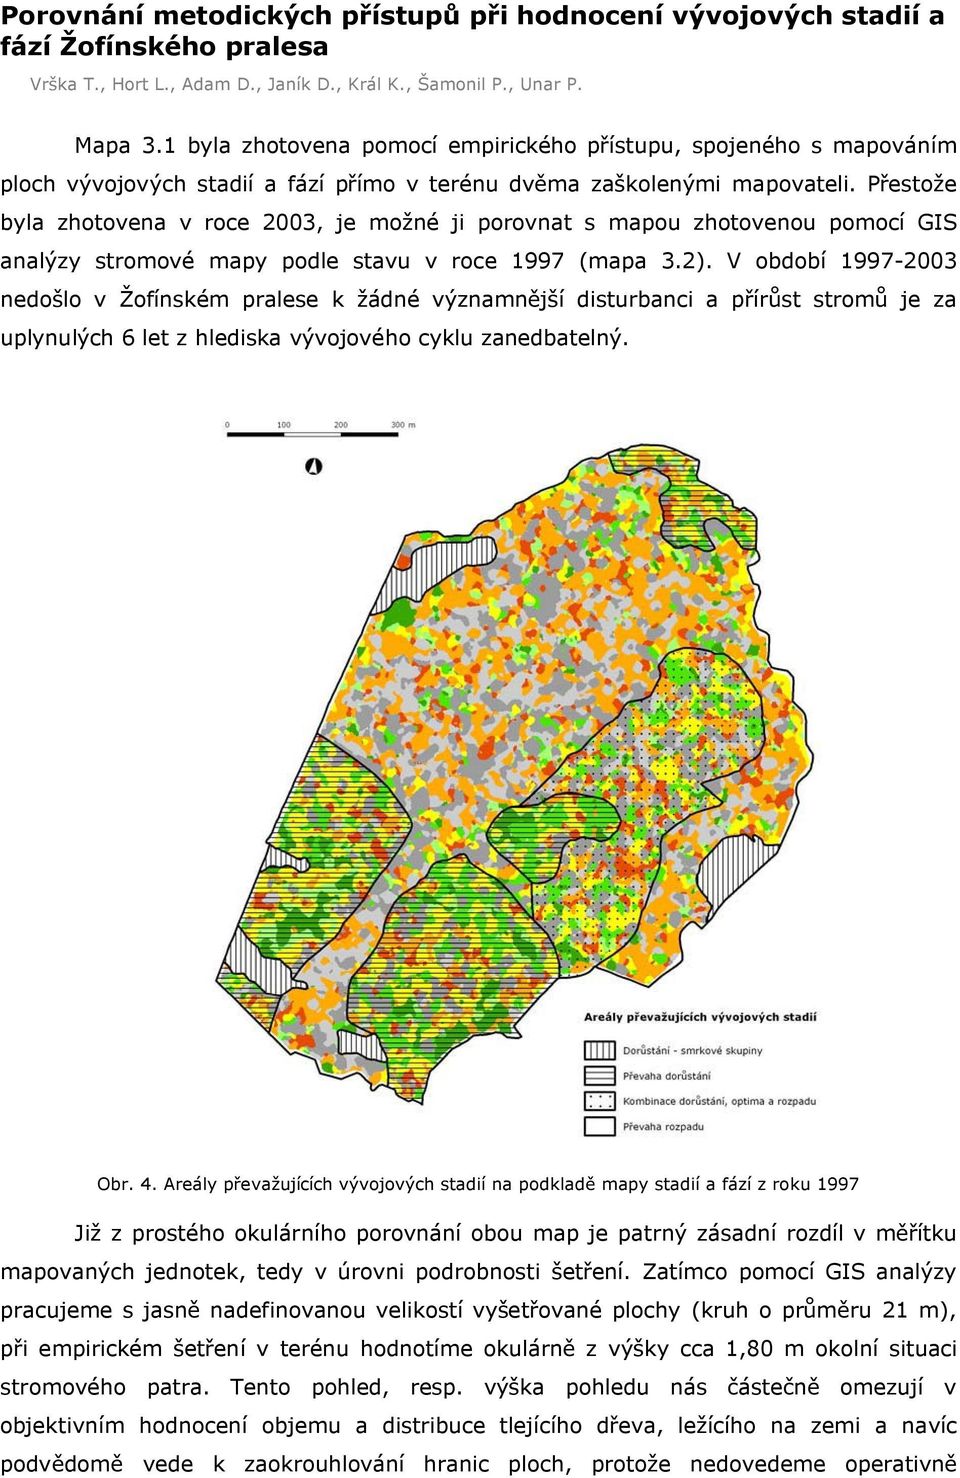 P estože byla zhotovena v roce 2003, je možné ji porovnat s mapou zhotovenou pomocí GIS analýzy stromové mapy podle stavu v roce 1997 (mapa 3.2).